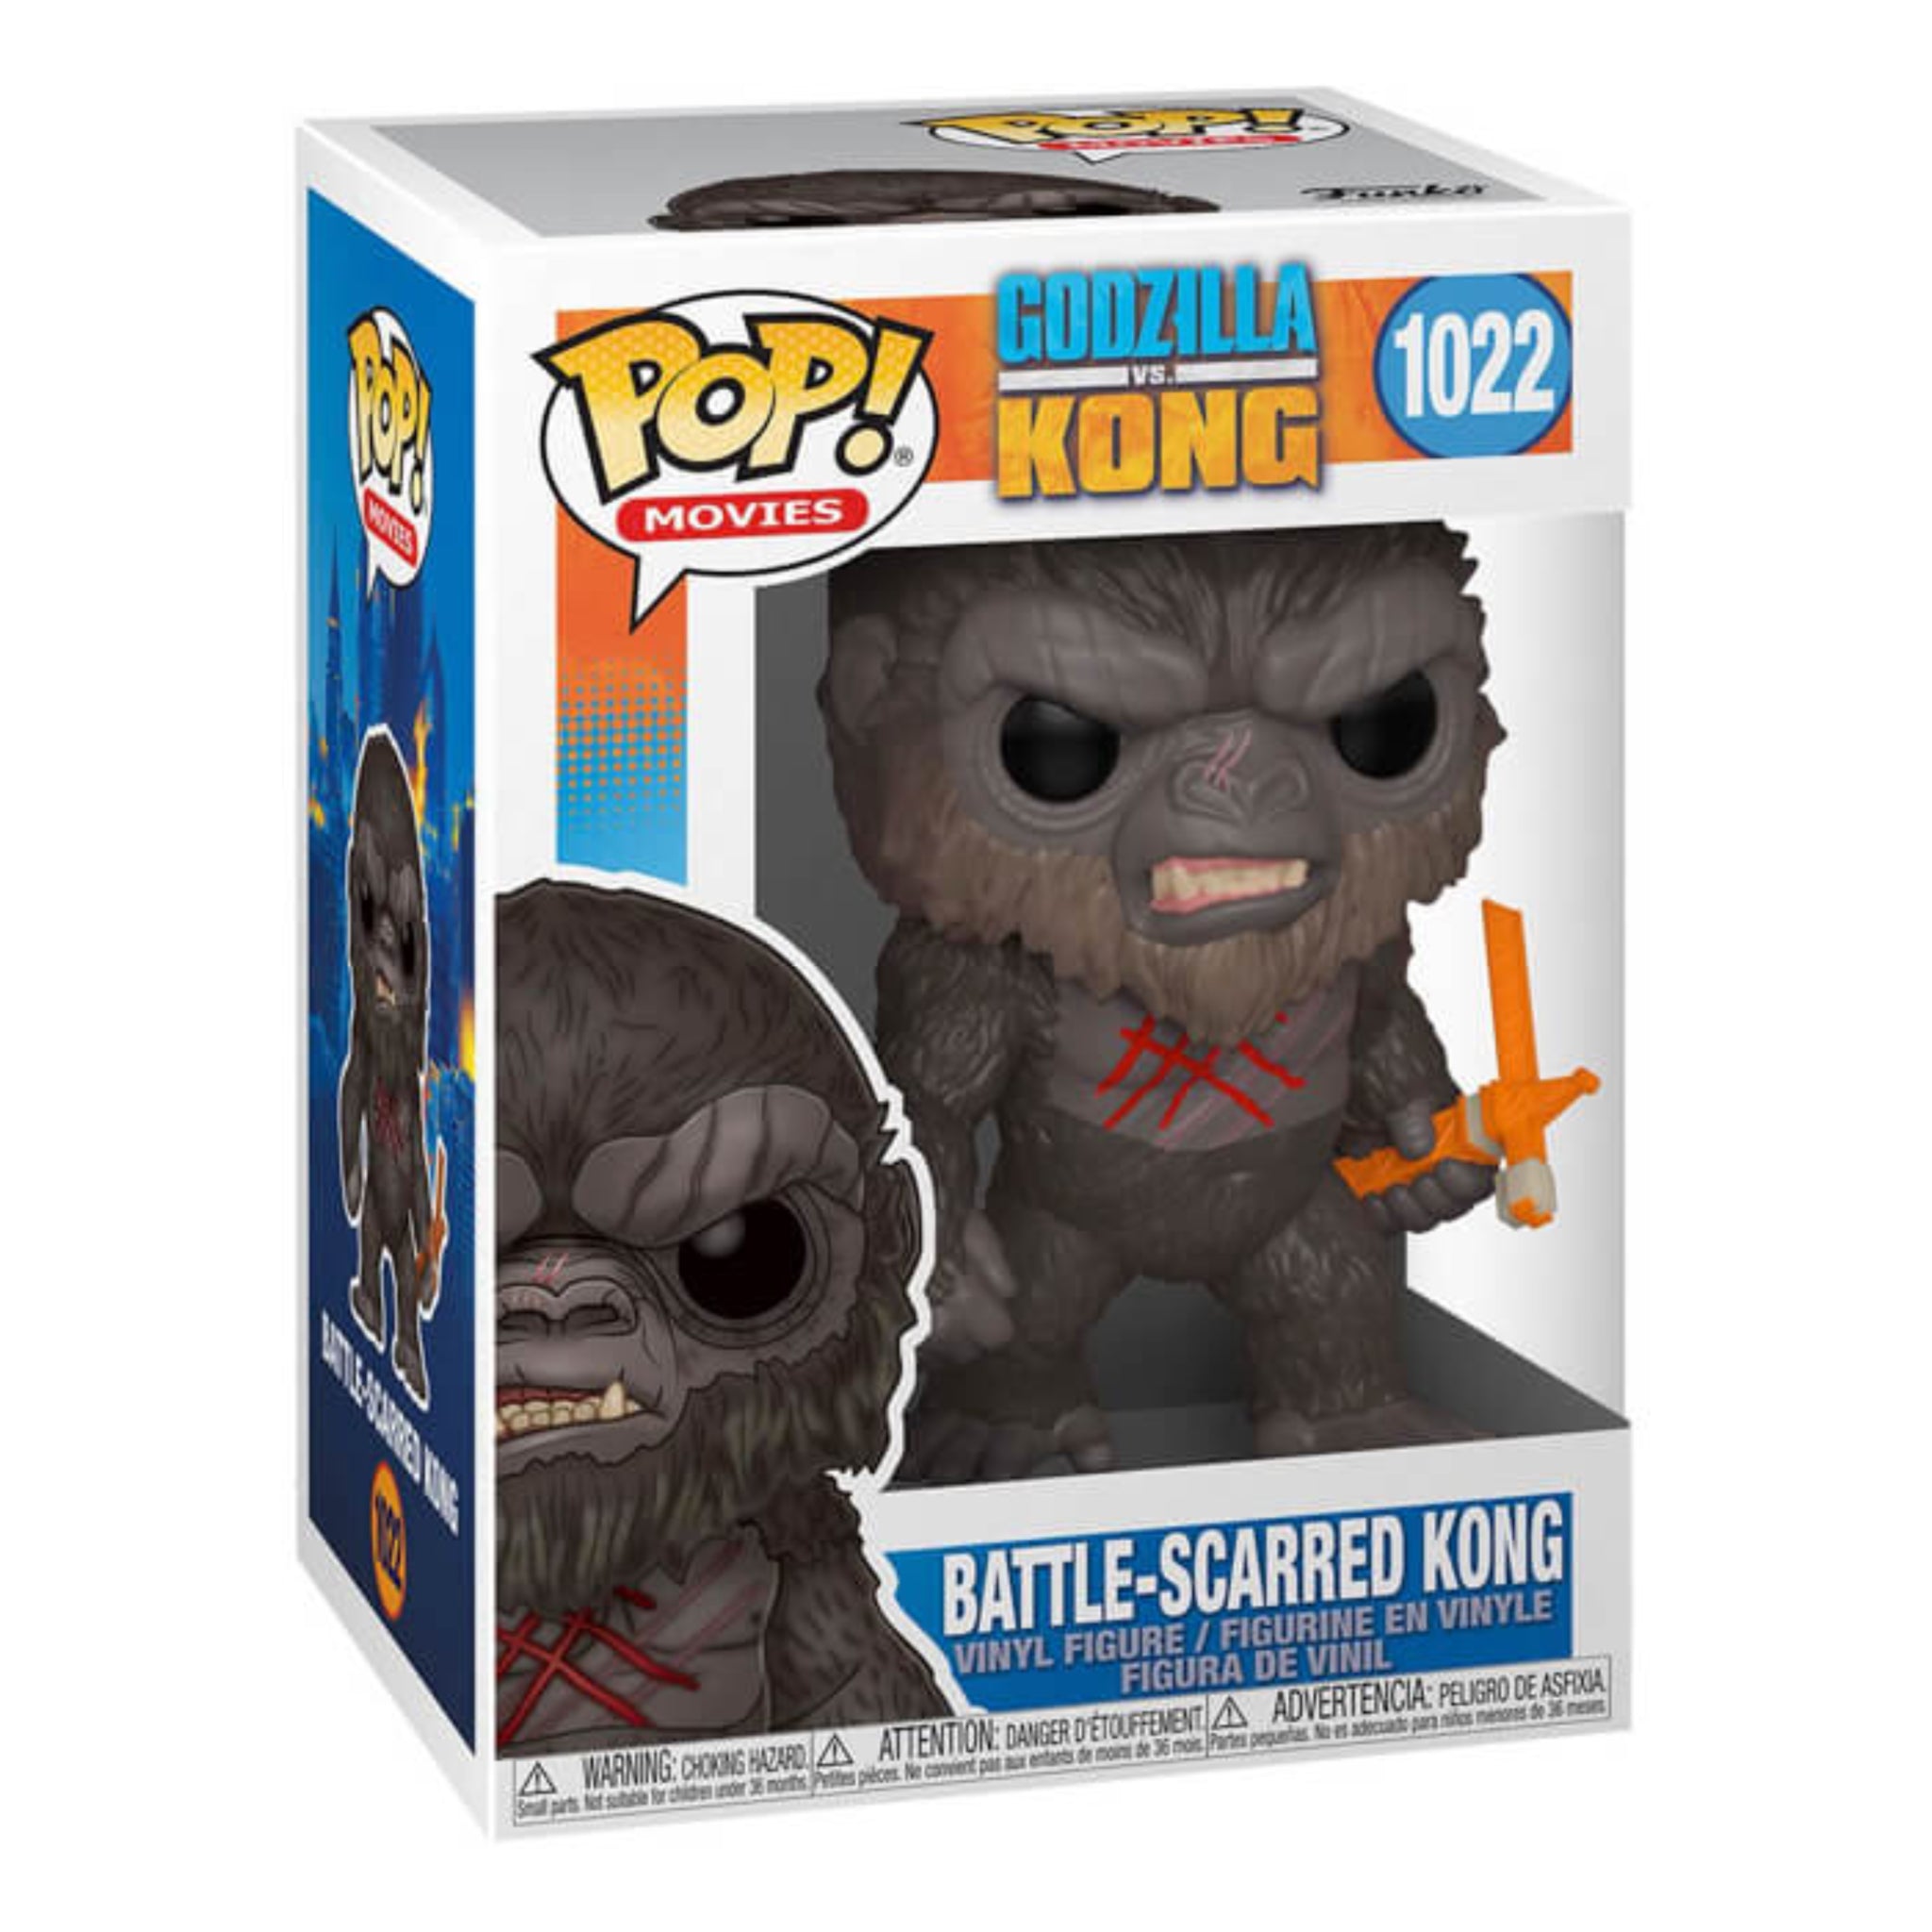 Battle-Scarred Kong Funko Pop!